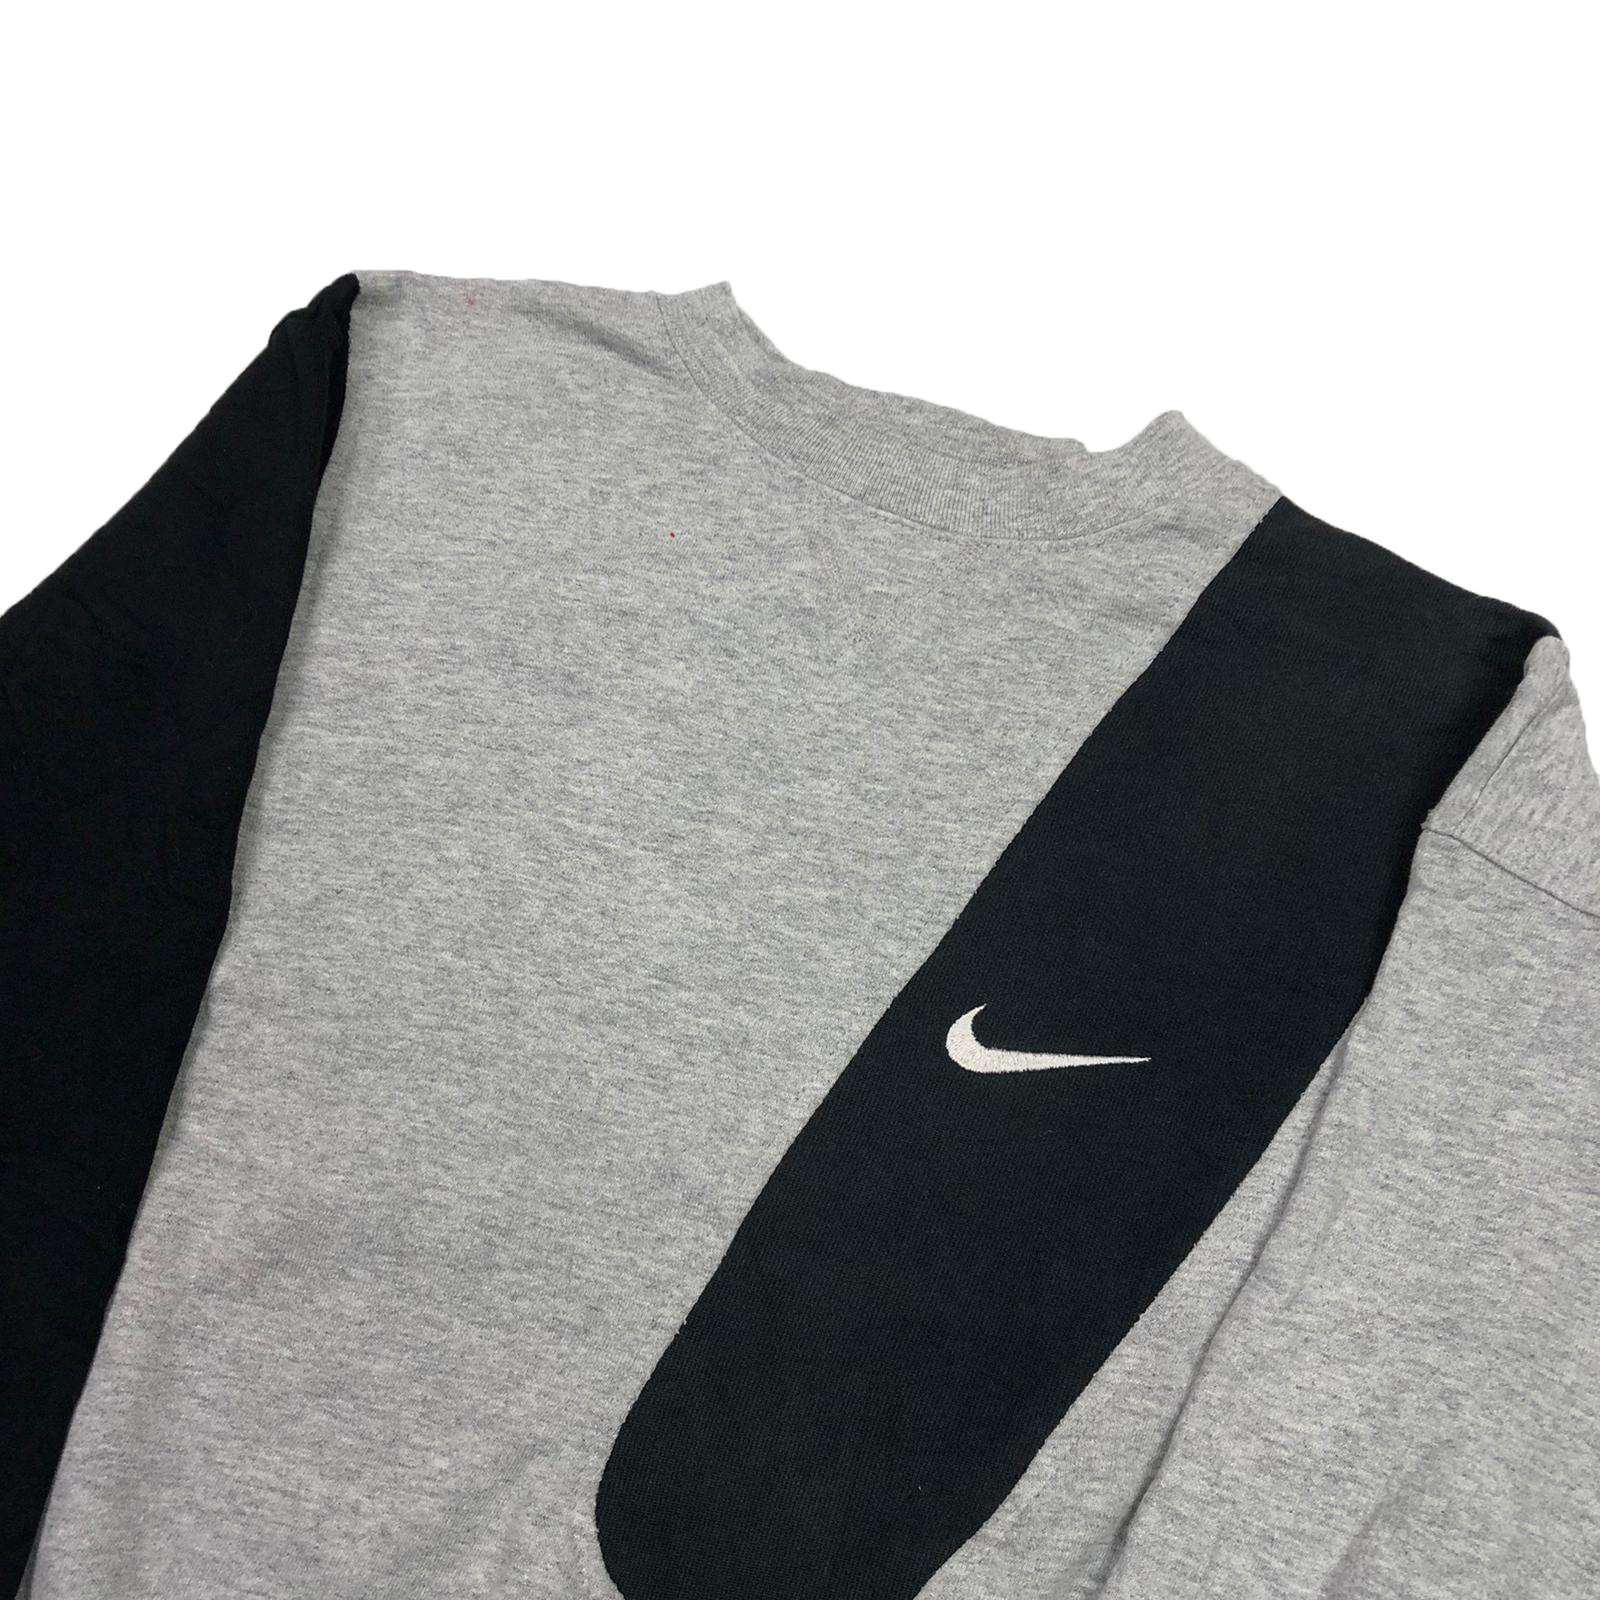 Reworked 90's Nike sweatshirt